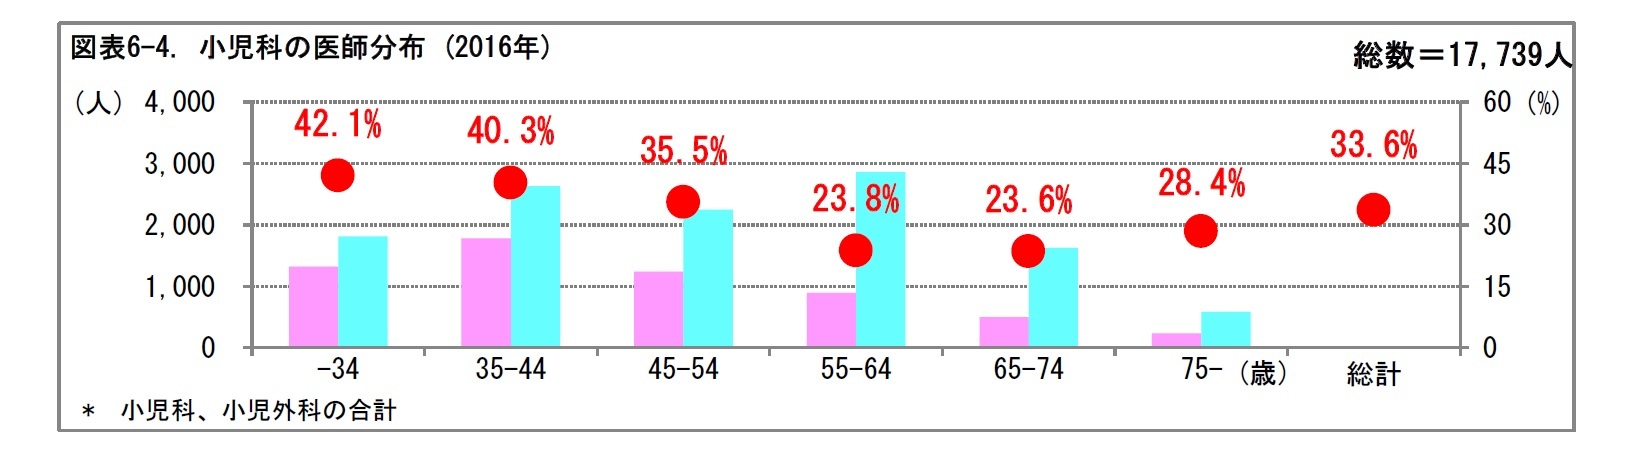 図表6-4. 小児科の医師分布 (2016年)